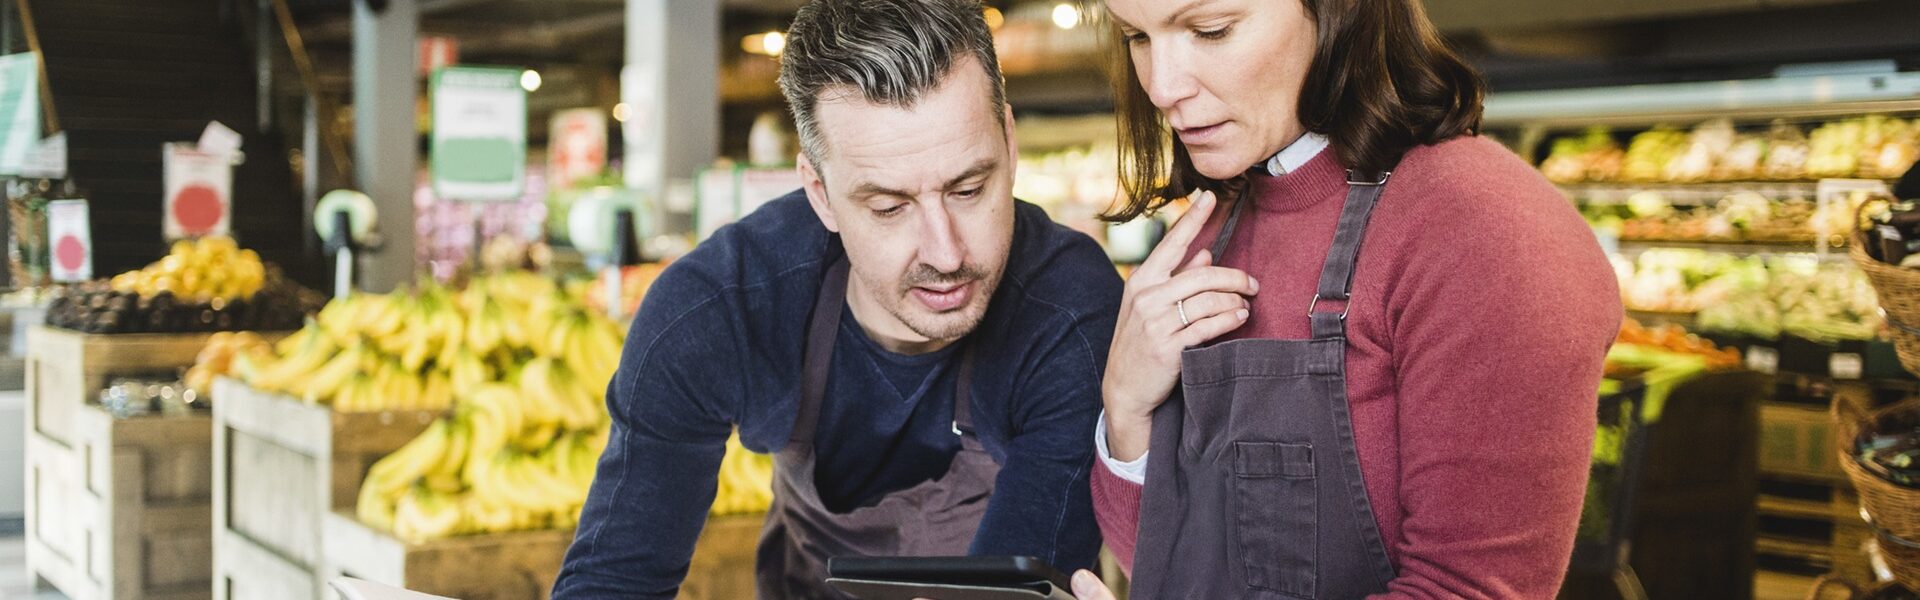 SAP anuncia nuevas capacidades de IA para el sector retail dirigidas a mejorar la experiencia del cliente